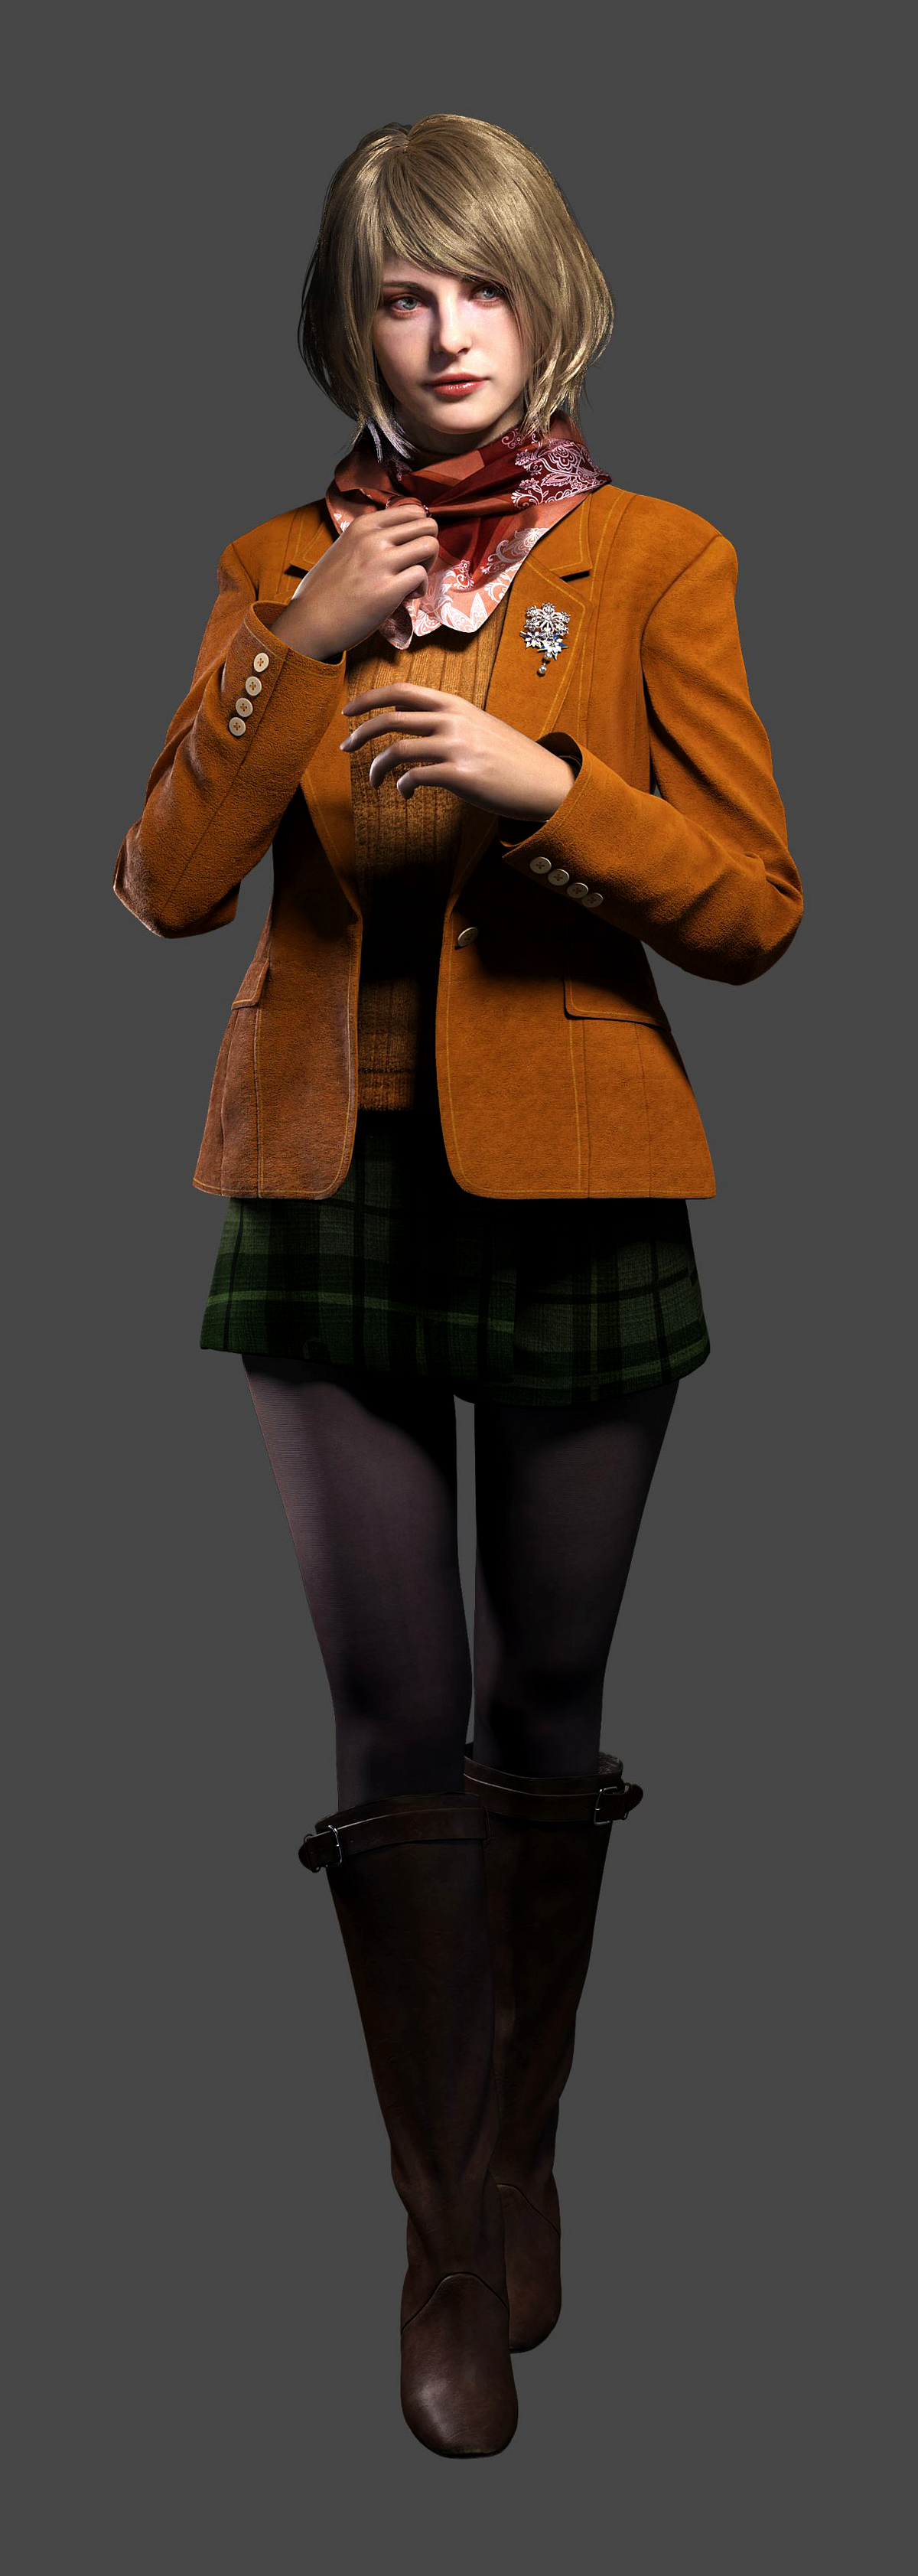 Ashley Graham, Resident Evil